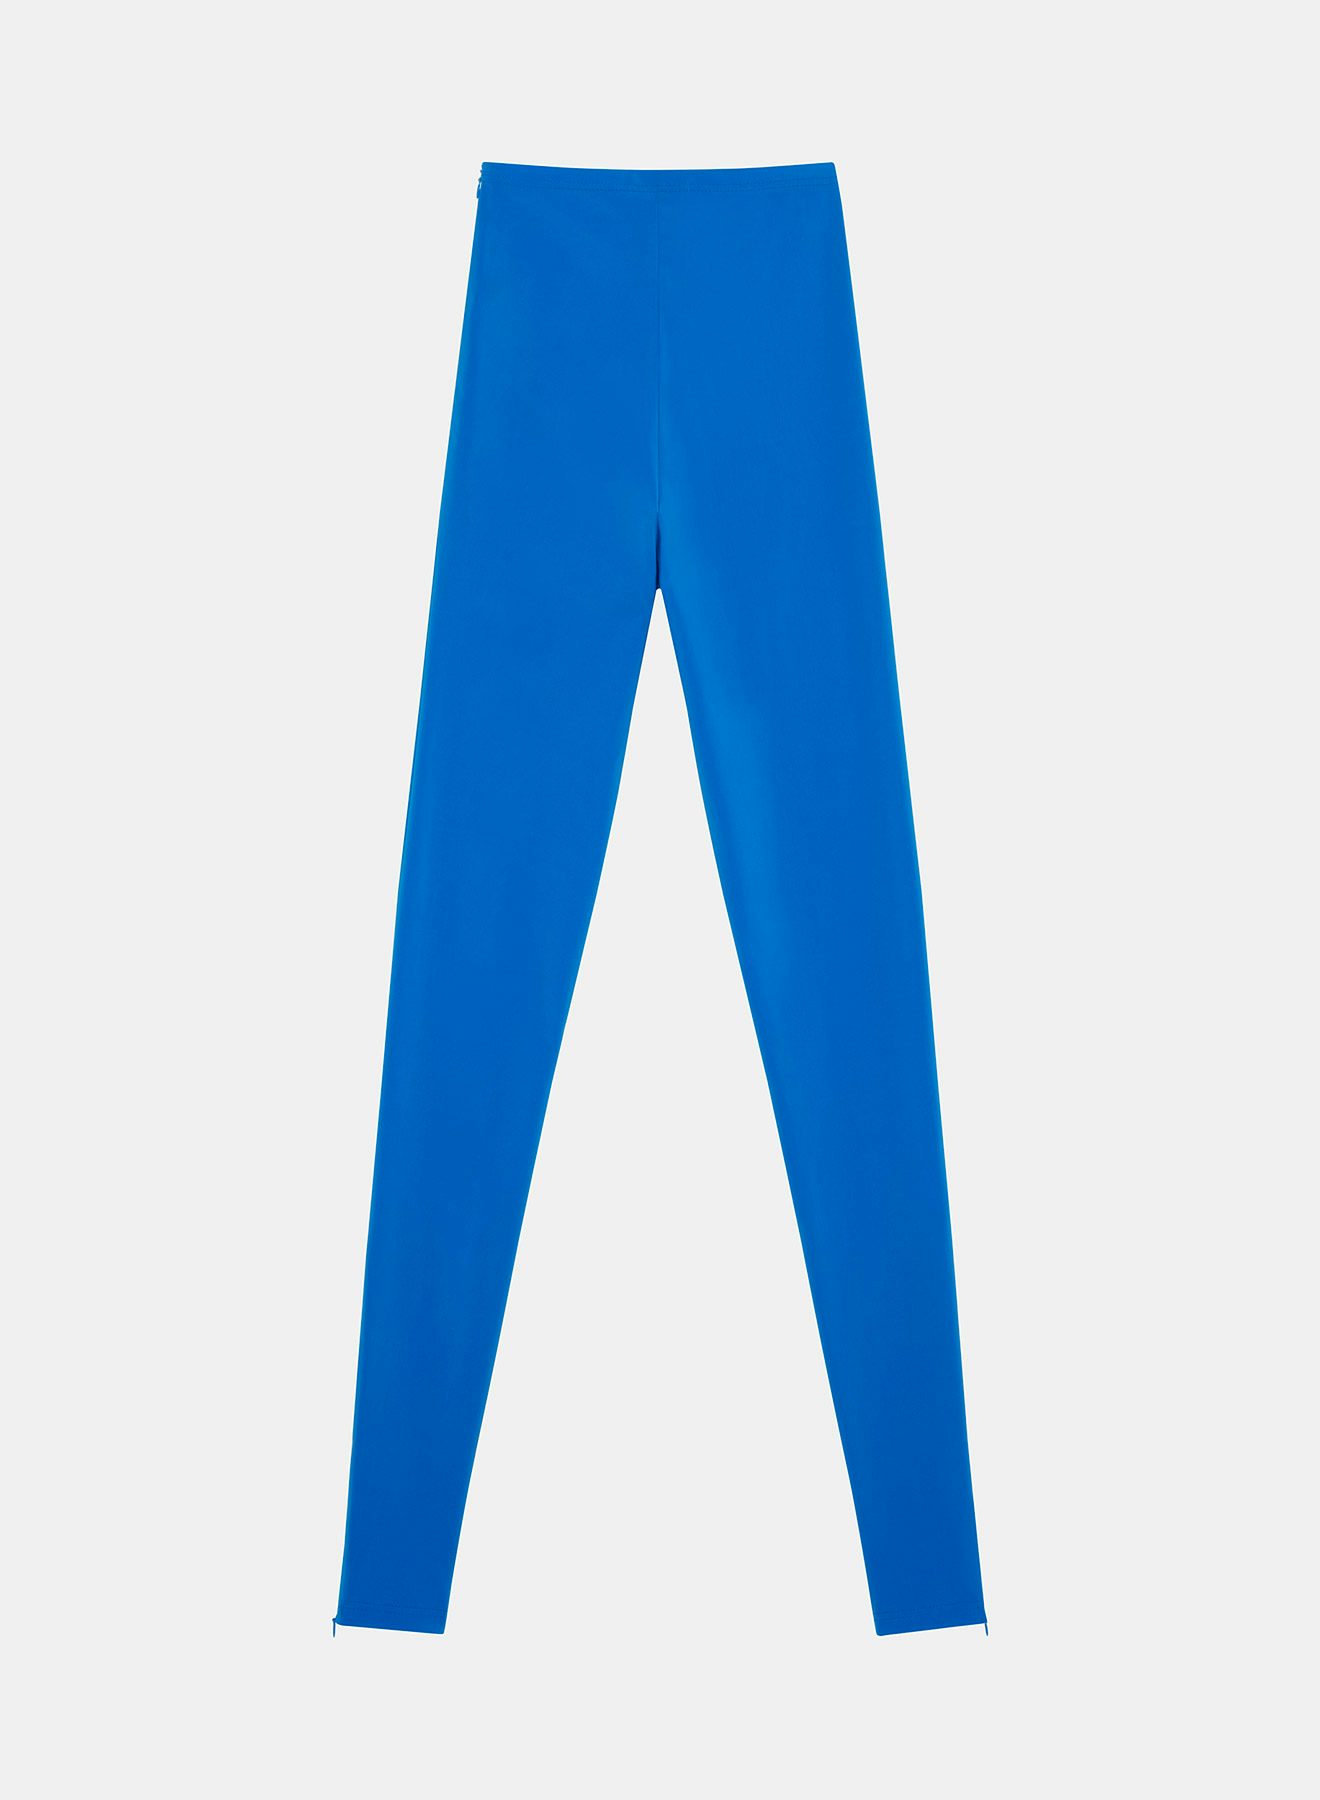 Blue leggings in light neoprene - Nina Ricci